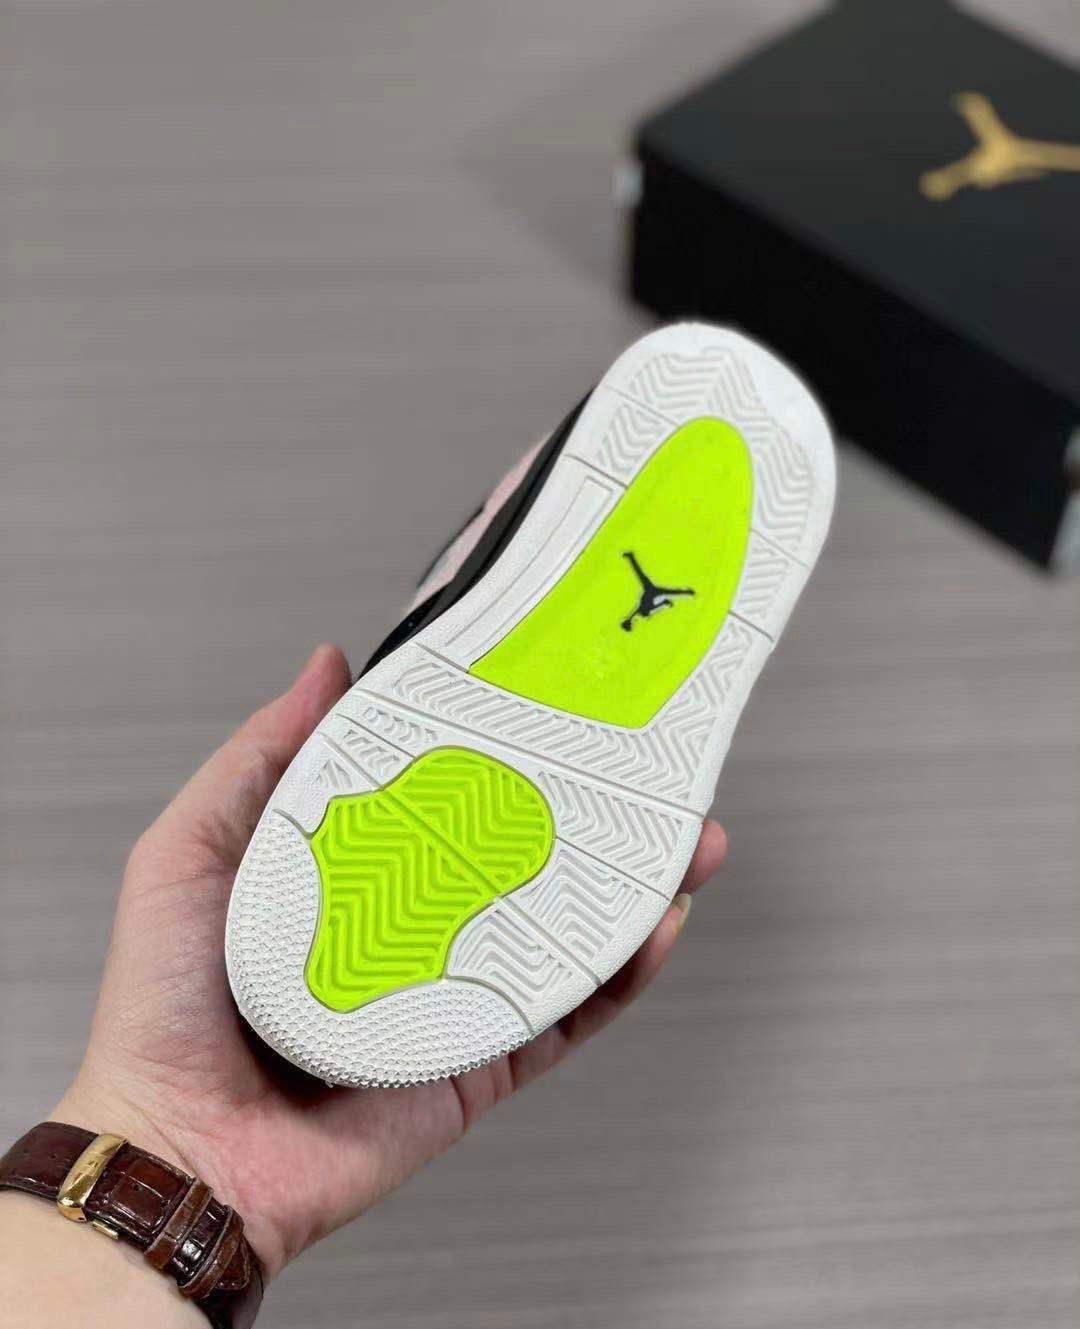 Nike air jordan 4 chaussures éclaboussures